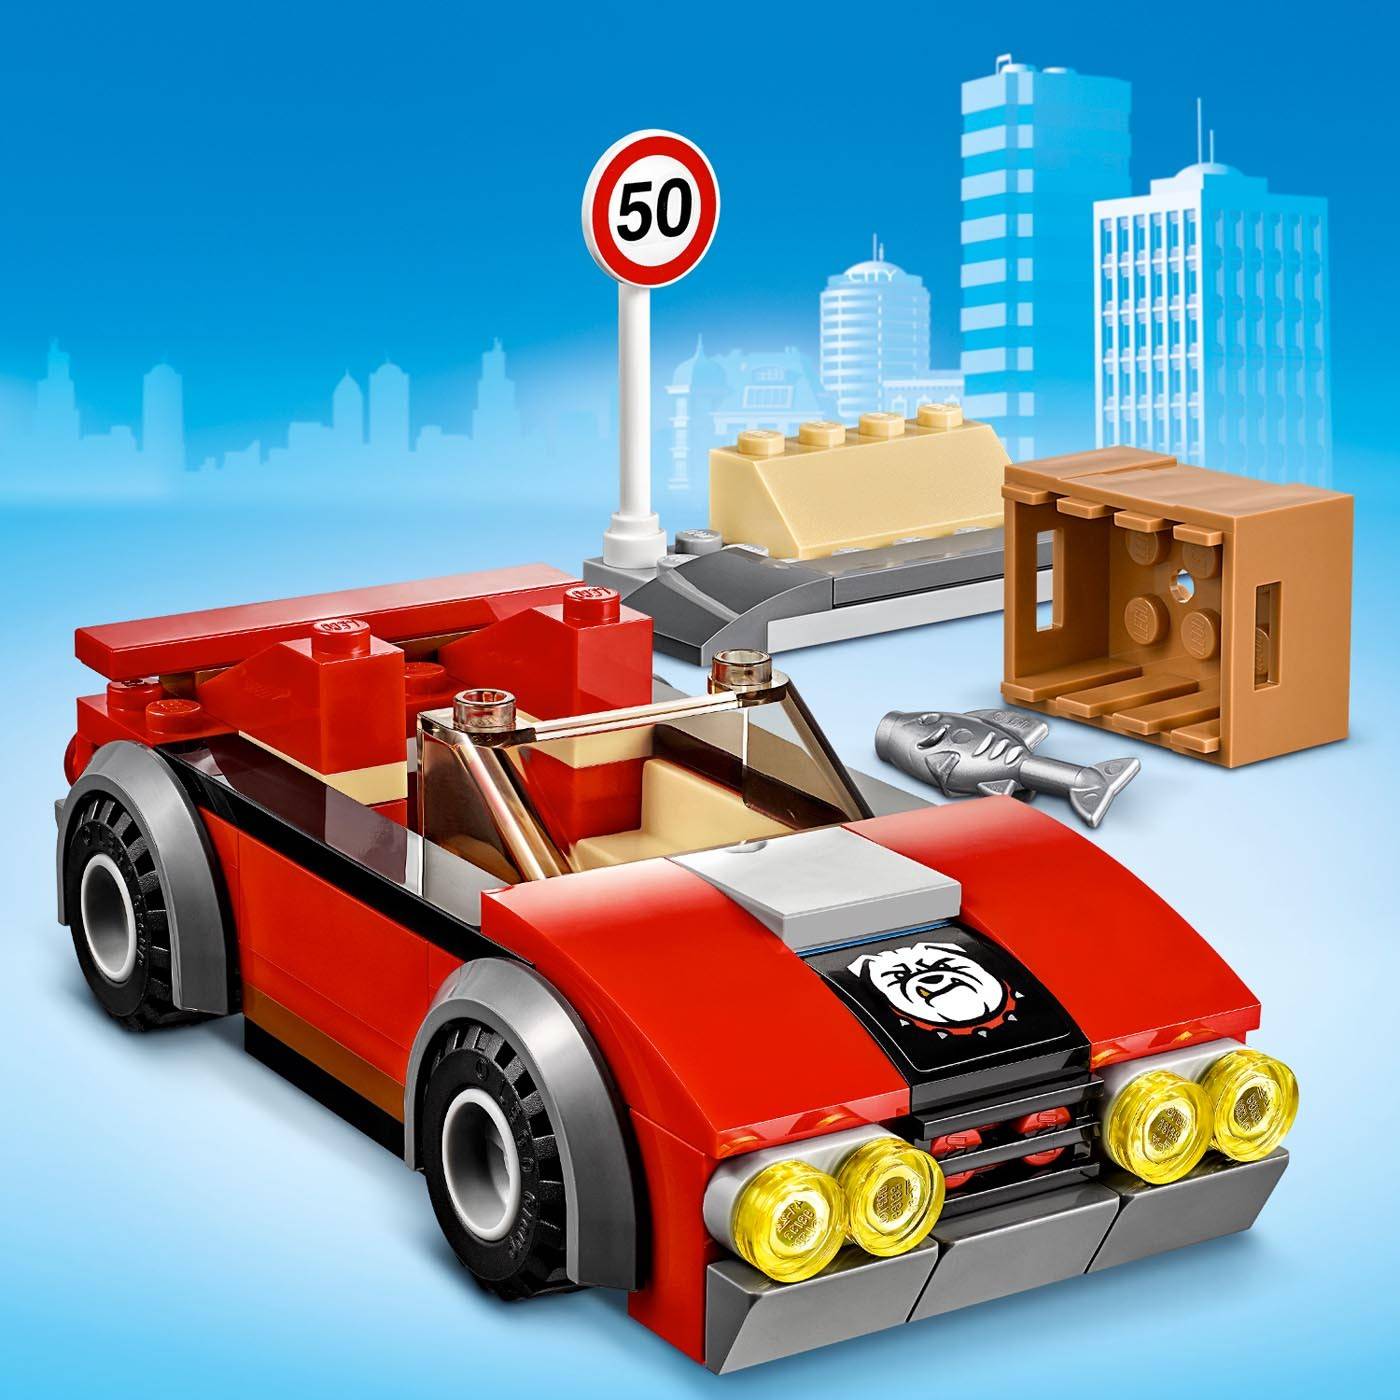 LEGO City Aresztowanie na autostradzie 60242